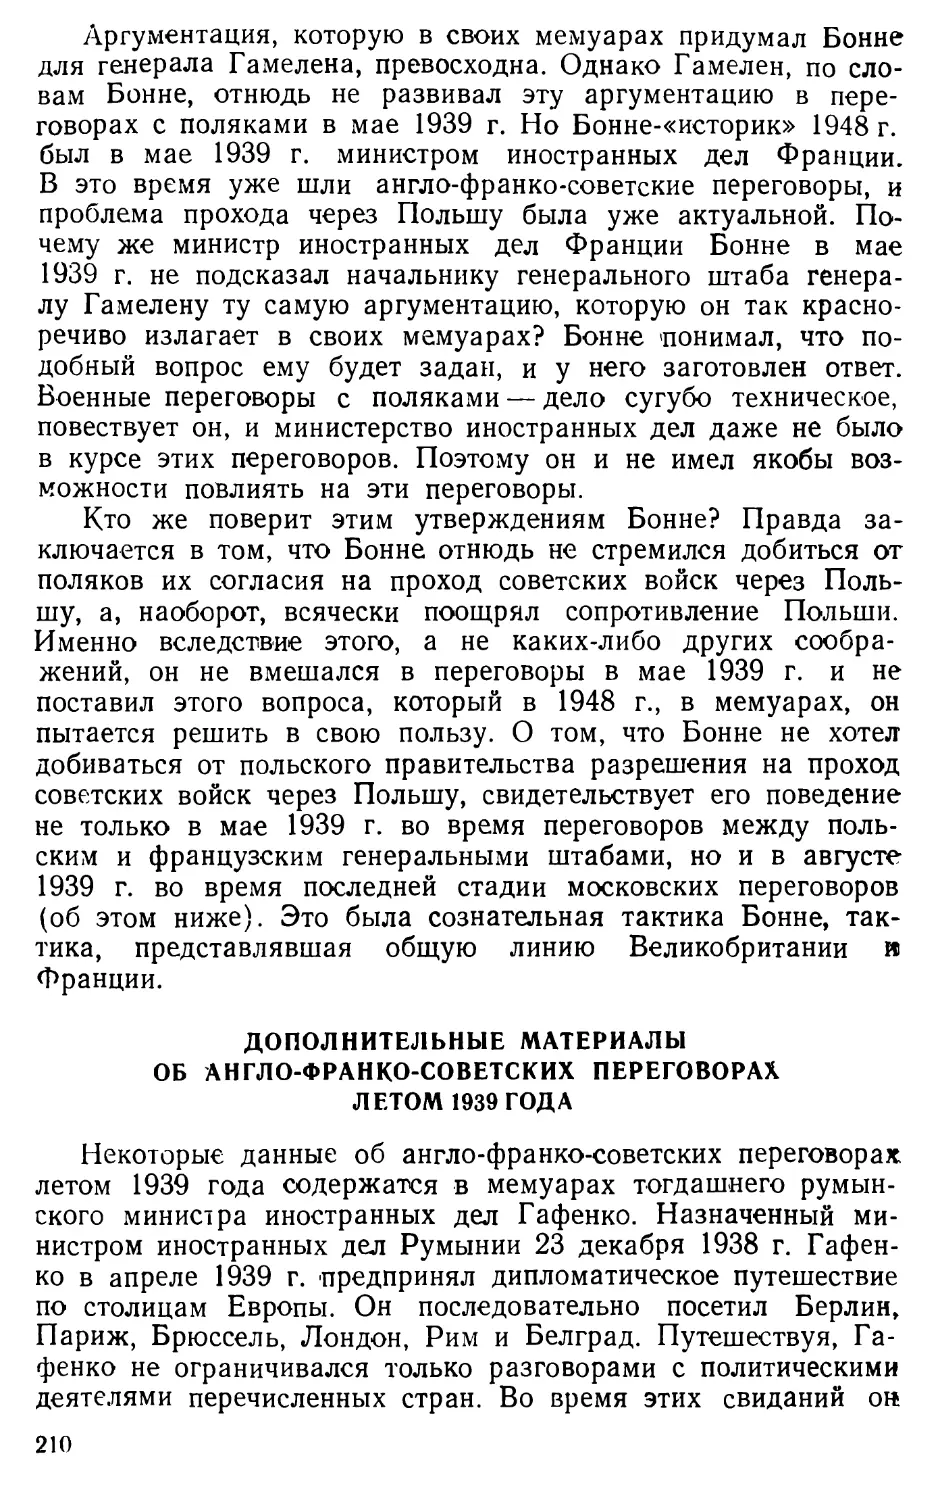 Дополнительные материалы об англо-франко-советских переговорах летом 1939 года